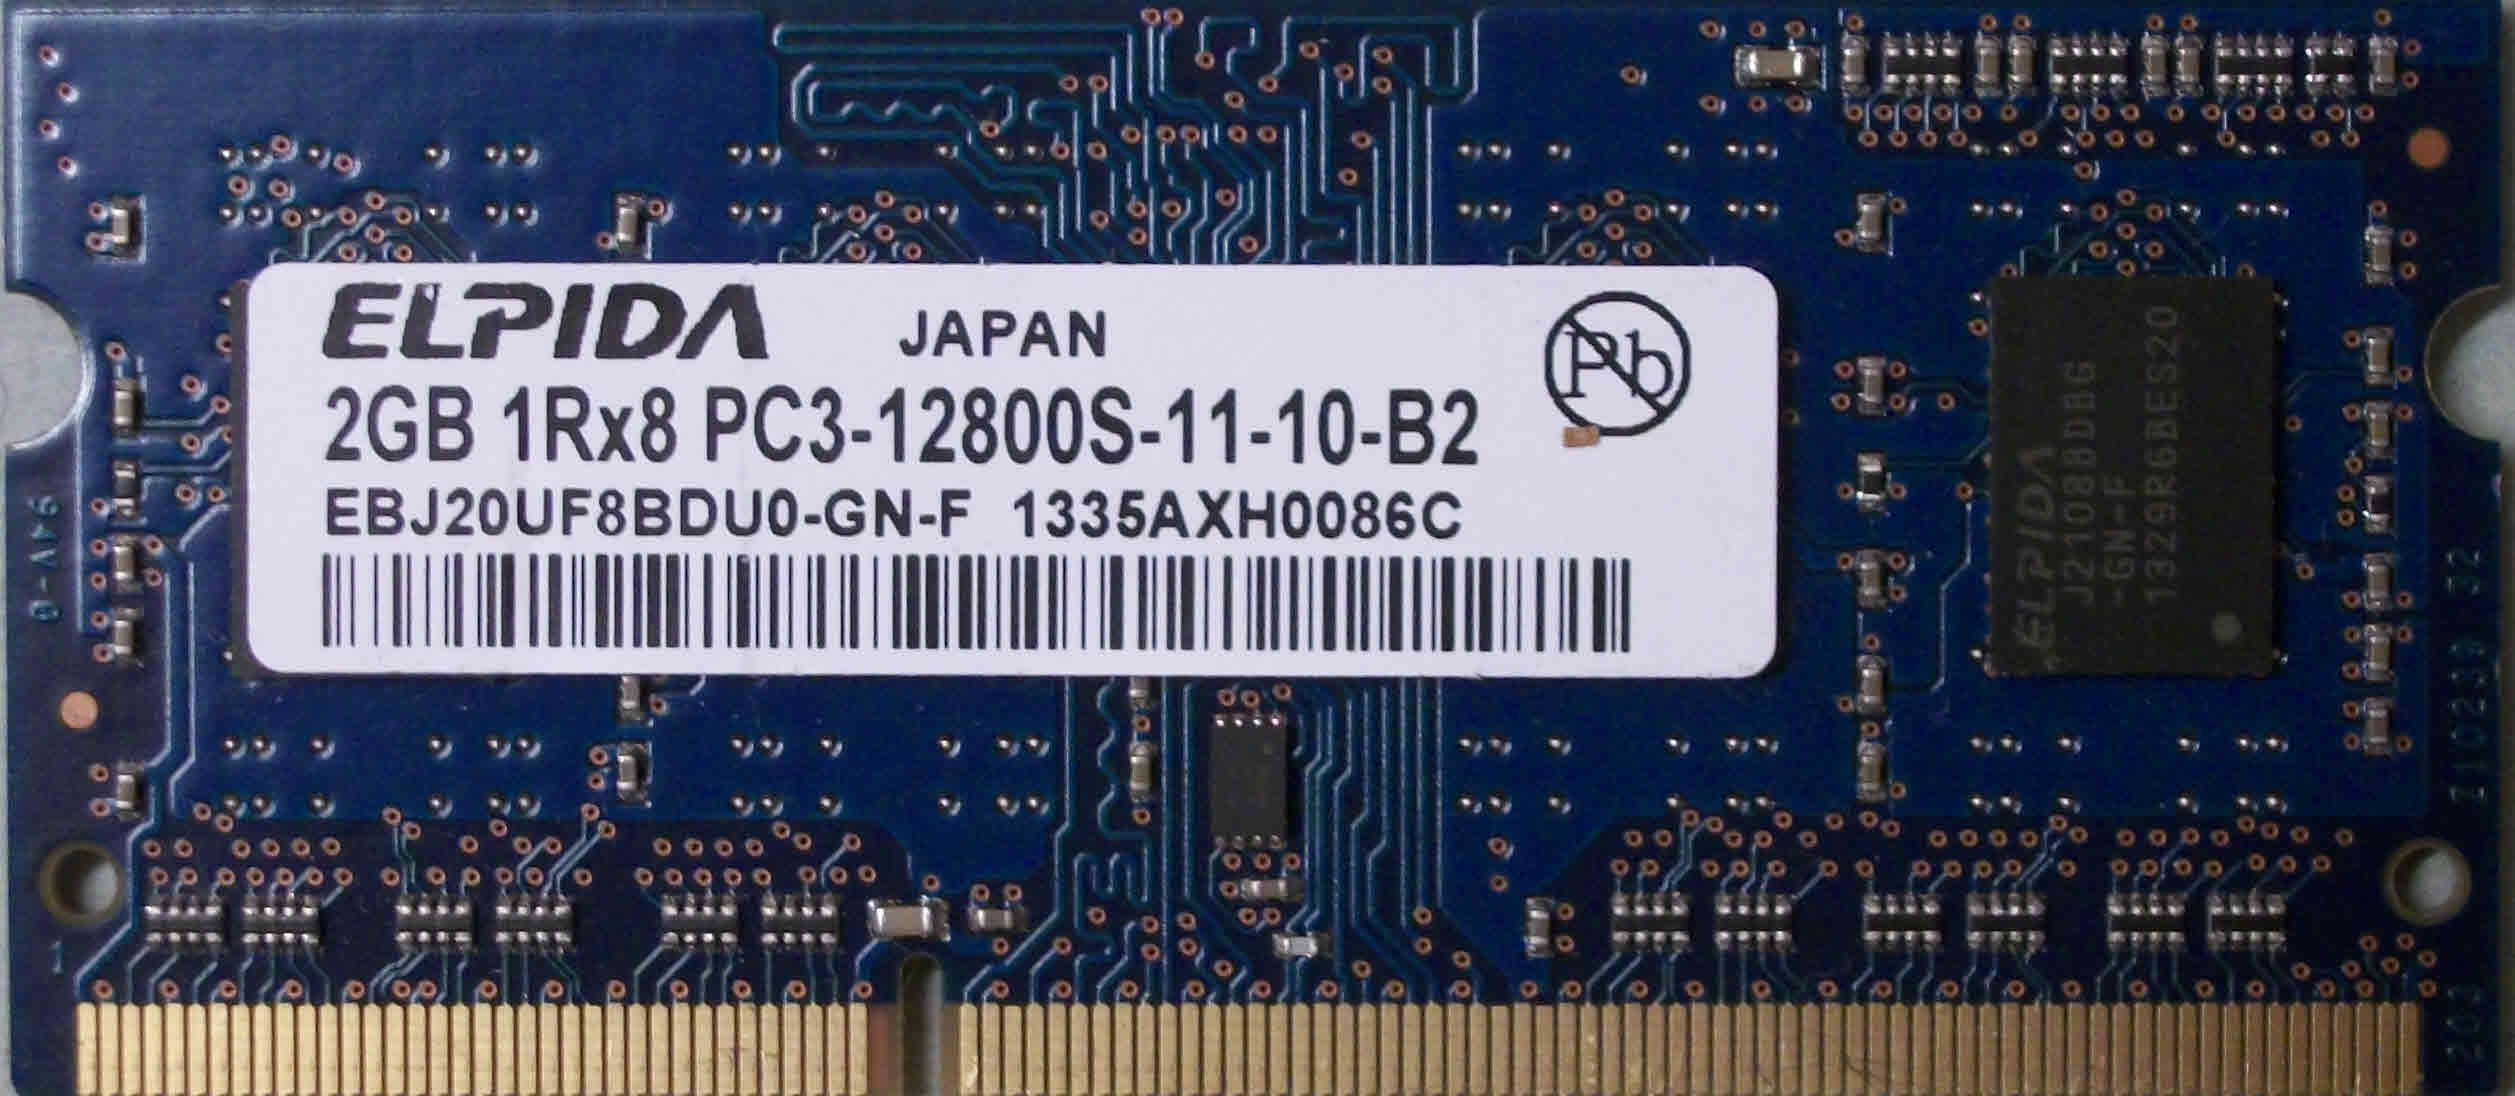 2GB 1Rx8 PC3-12800S-11-10-B2 Hynix